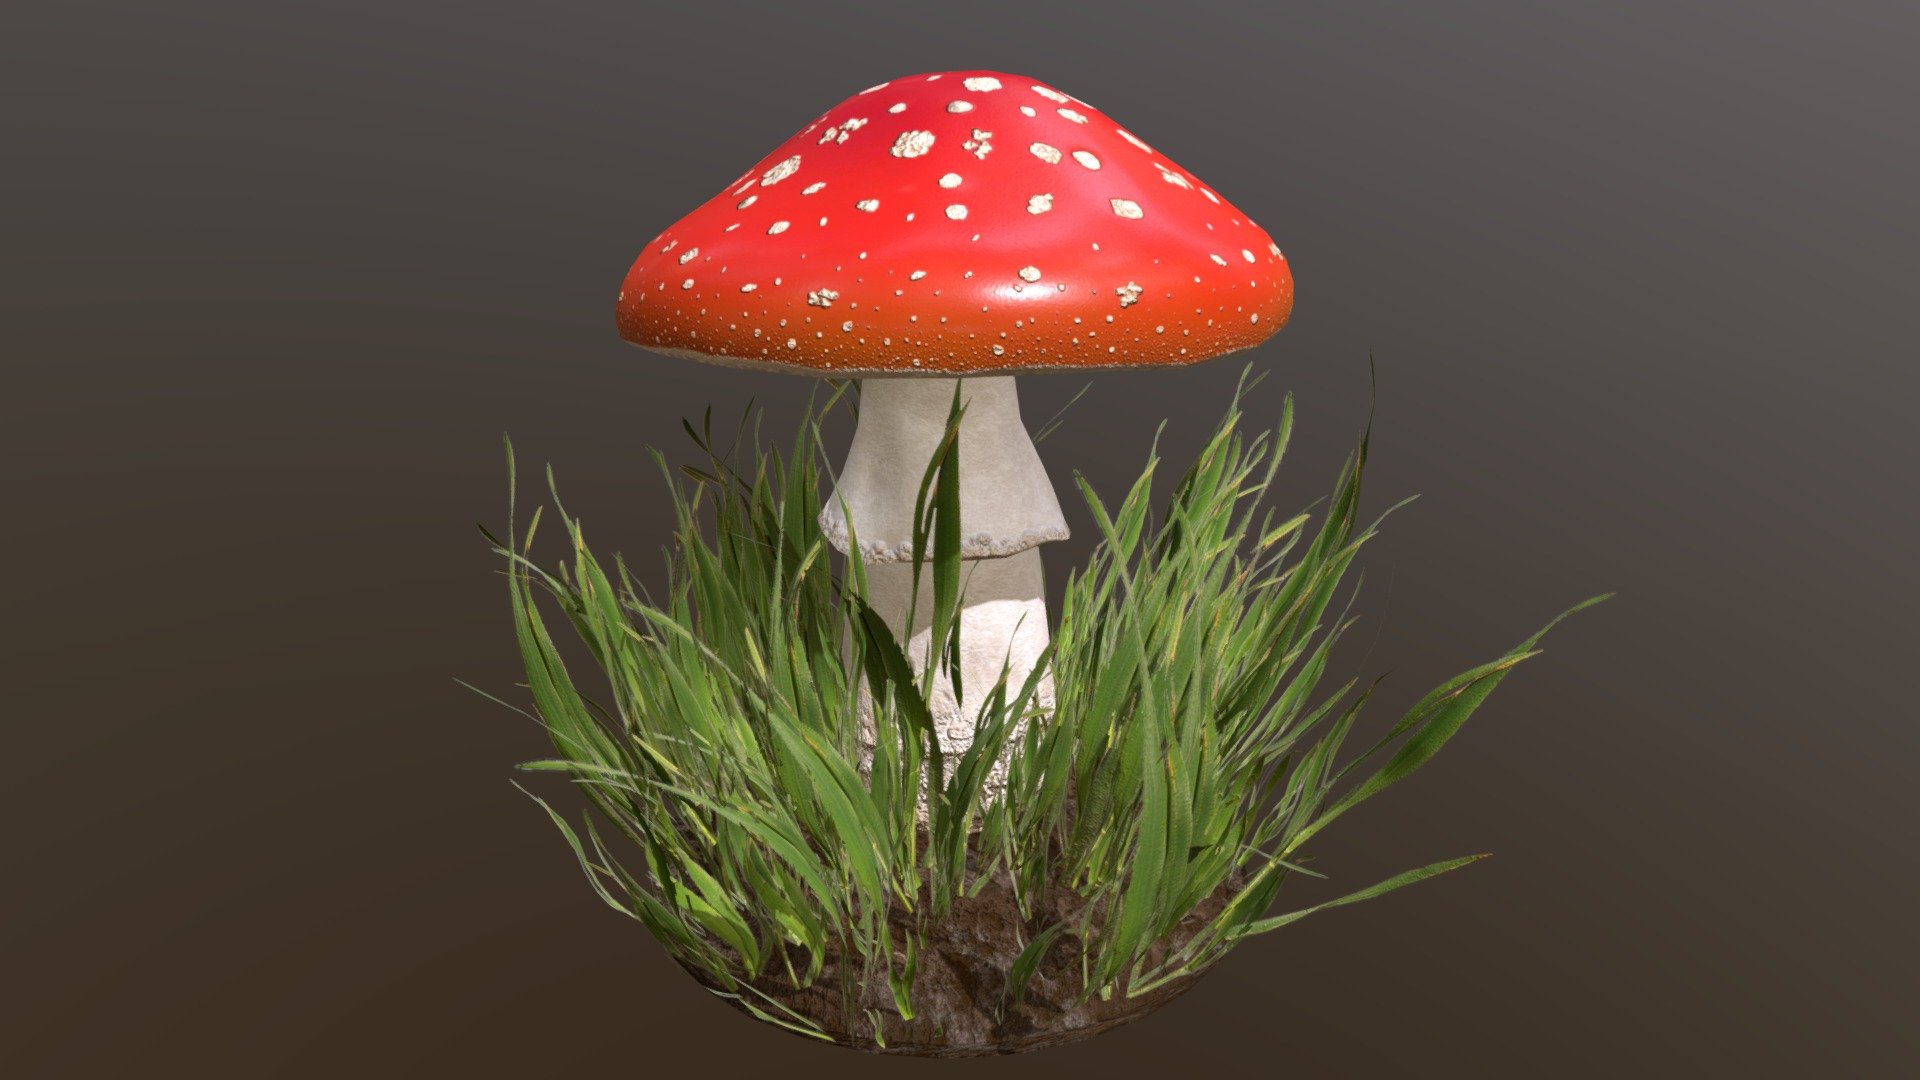 3D model created in Blender and Substance Painter - Mushroom - 3D model by Milisandra 3d model